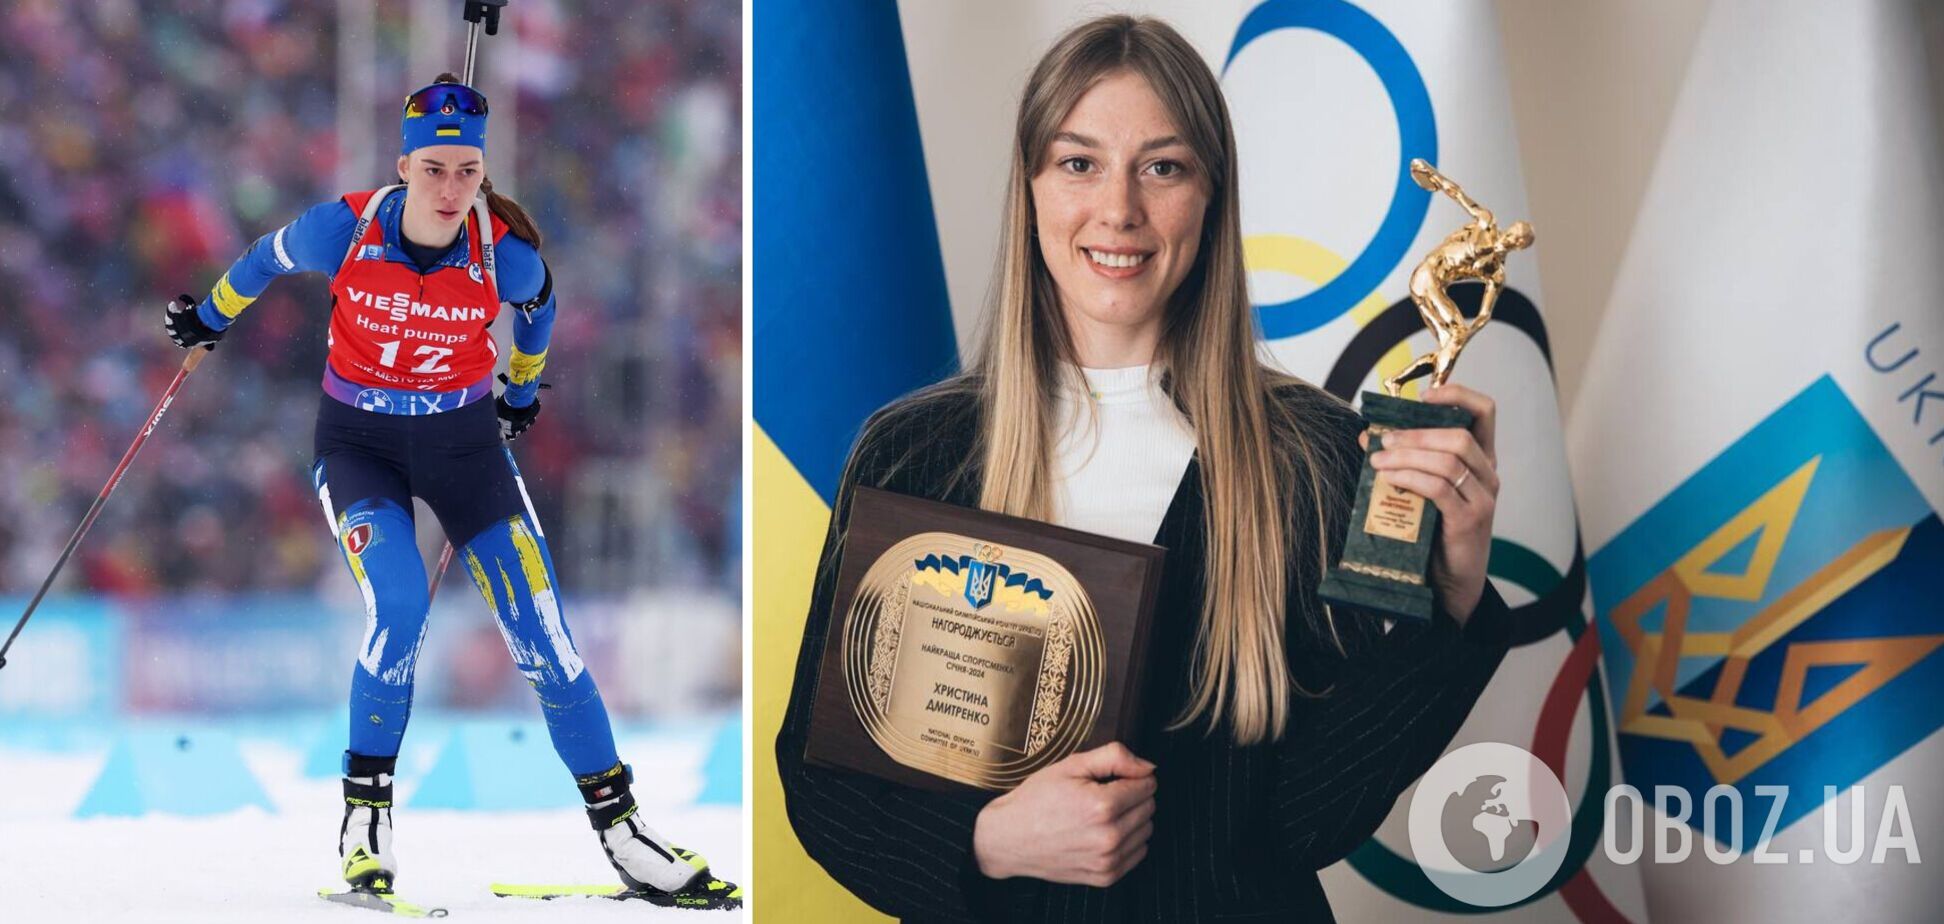 'Дуже моторошно': українській біатлоністці, що стала відкриттям сезону, боляче через зруйновану Чернігівщину, але змагається з холодною головою